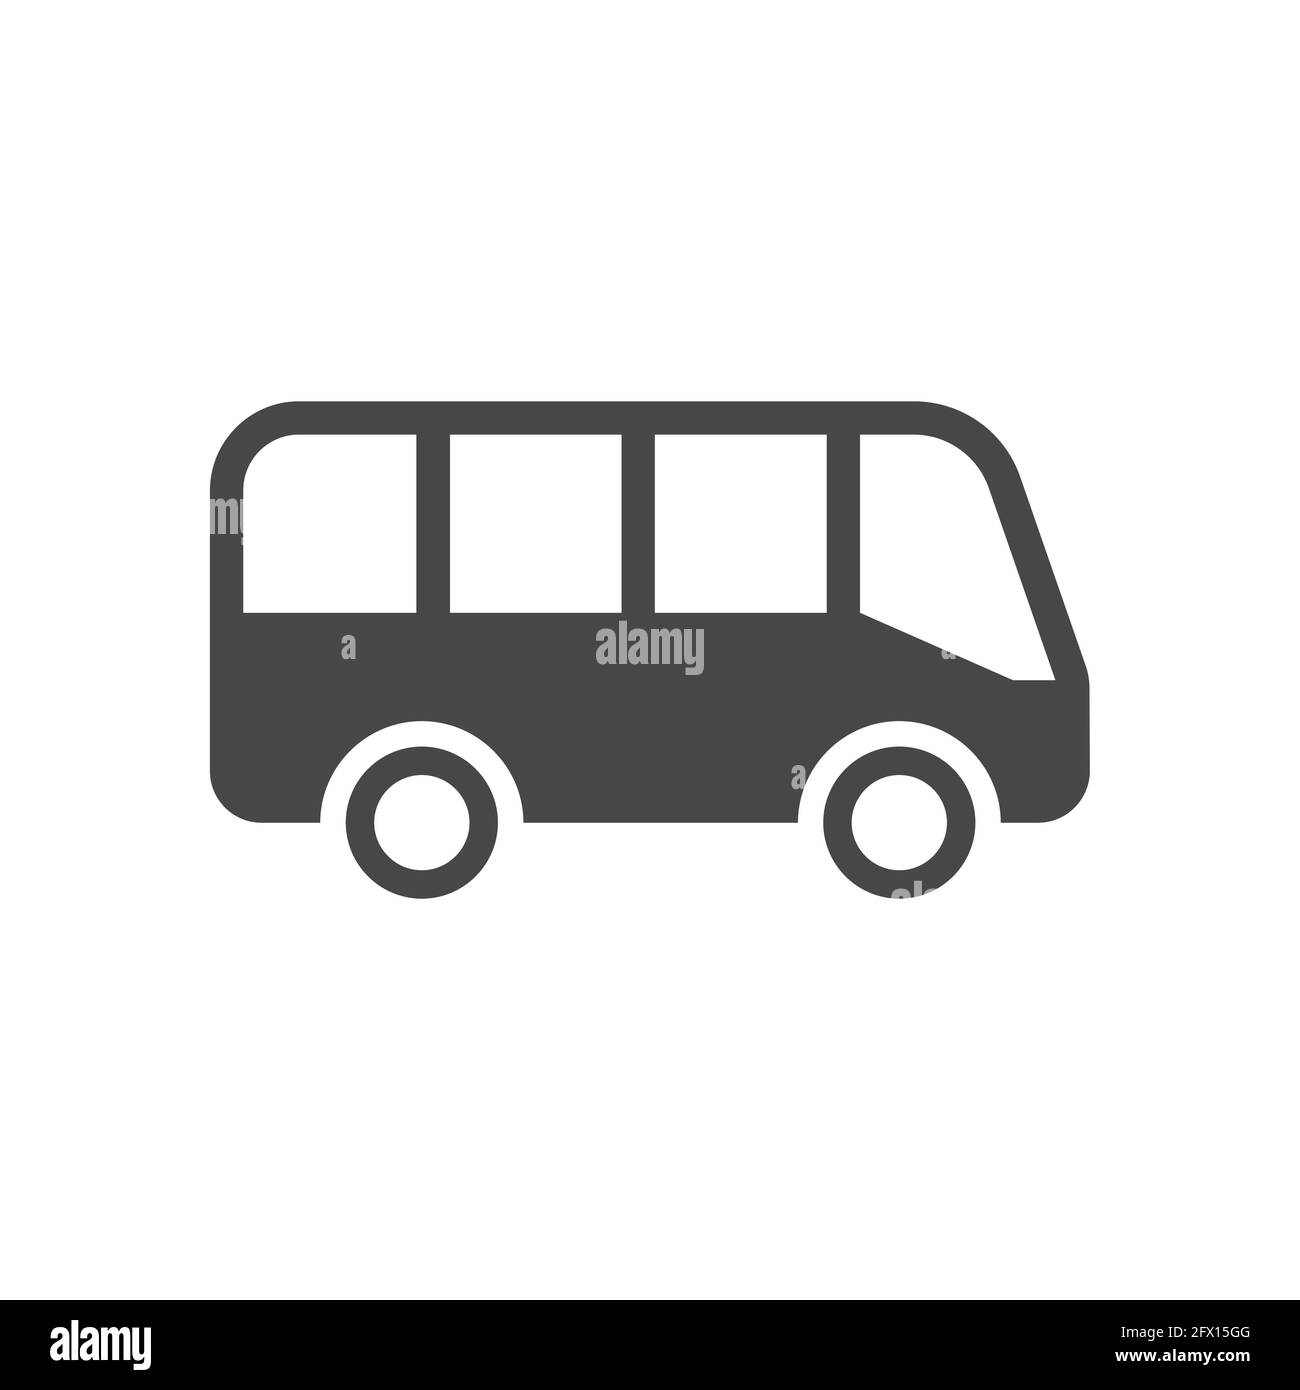 Bus simple black vector icon. Glyph autobus symbol. Stock Vector